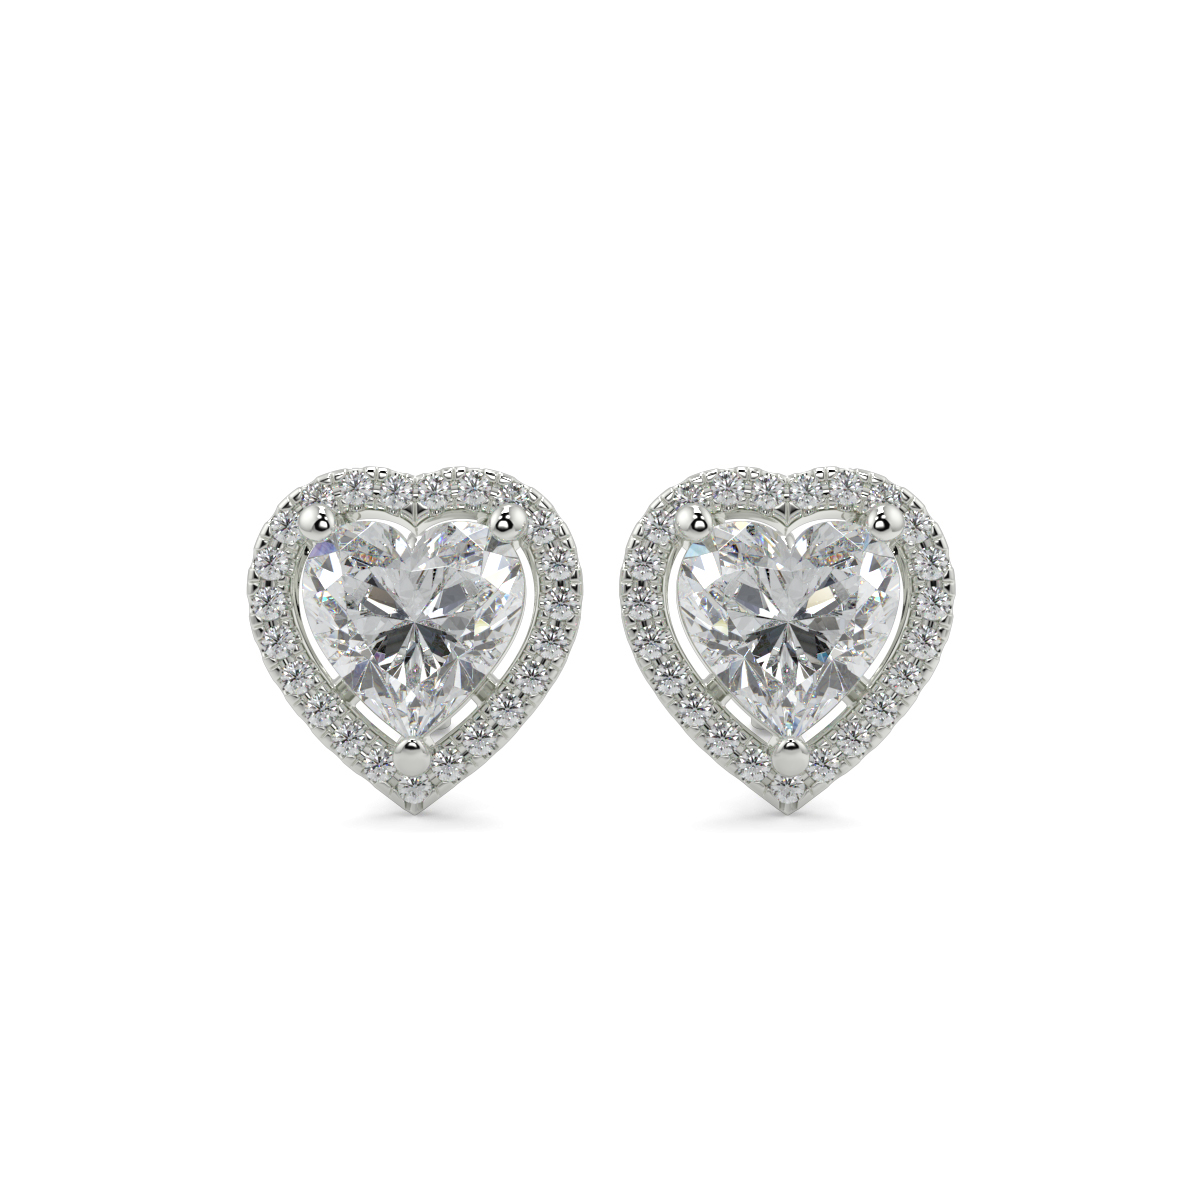 Buy Halo Diamond Earrings